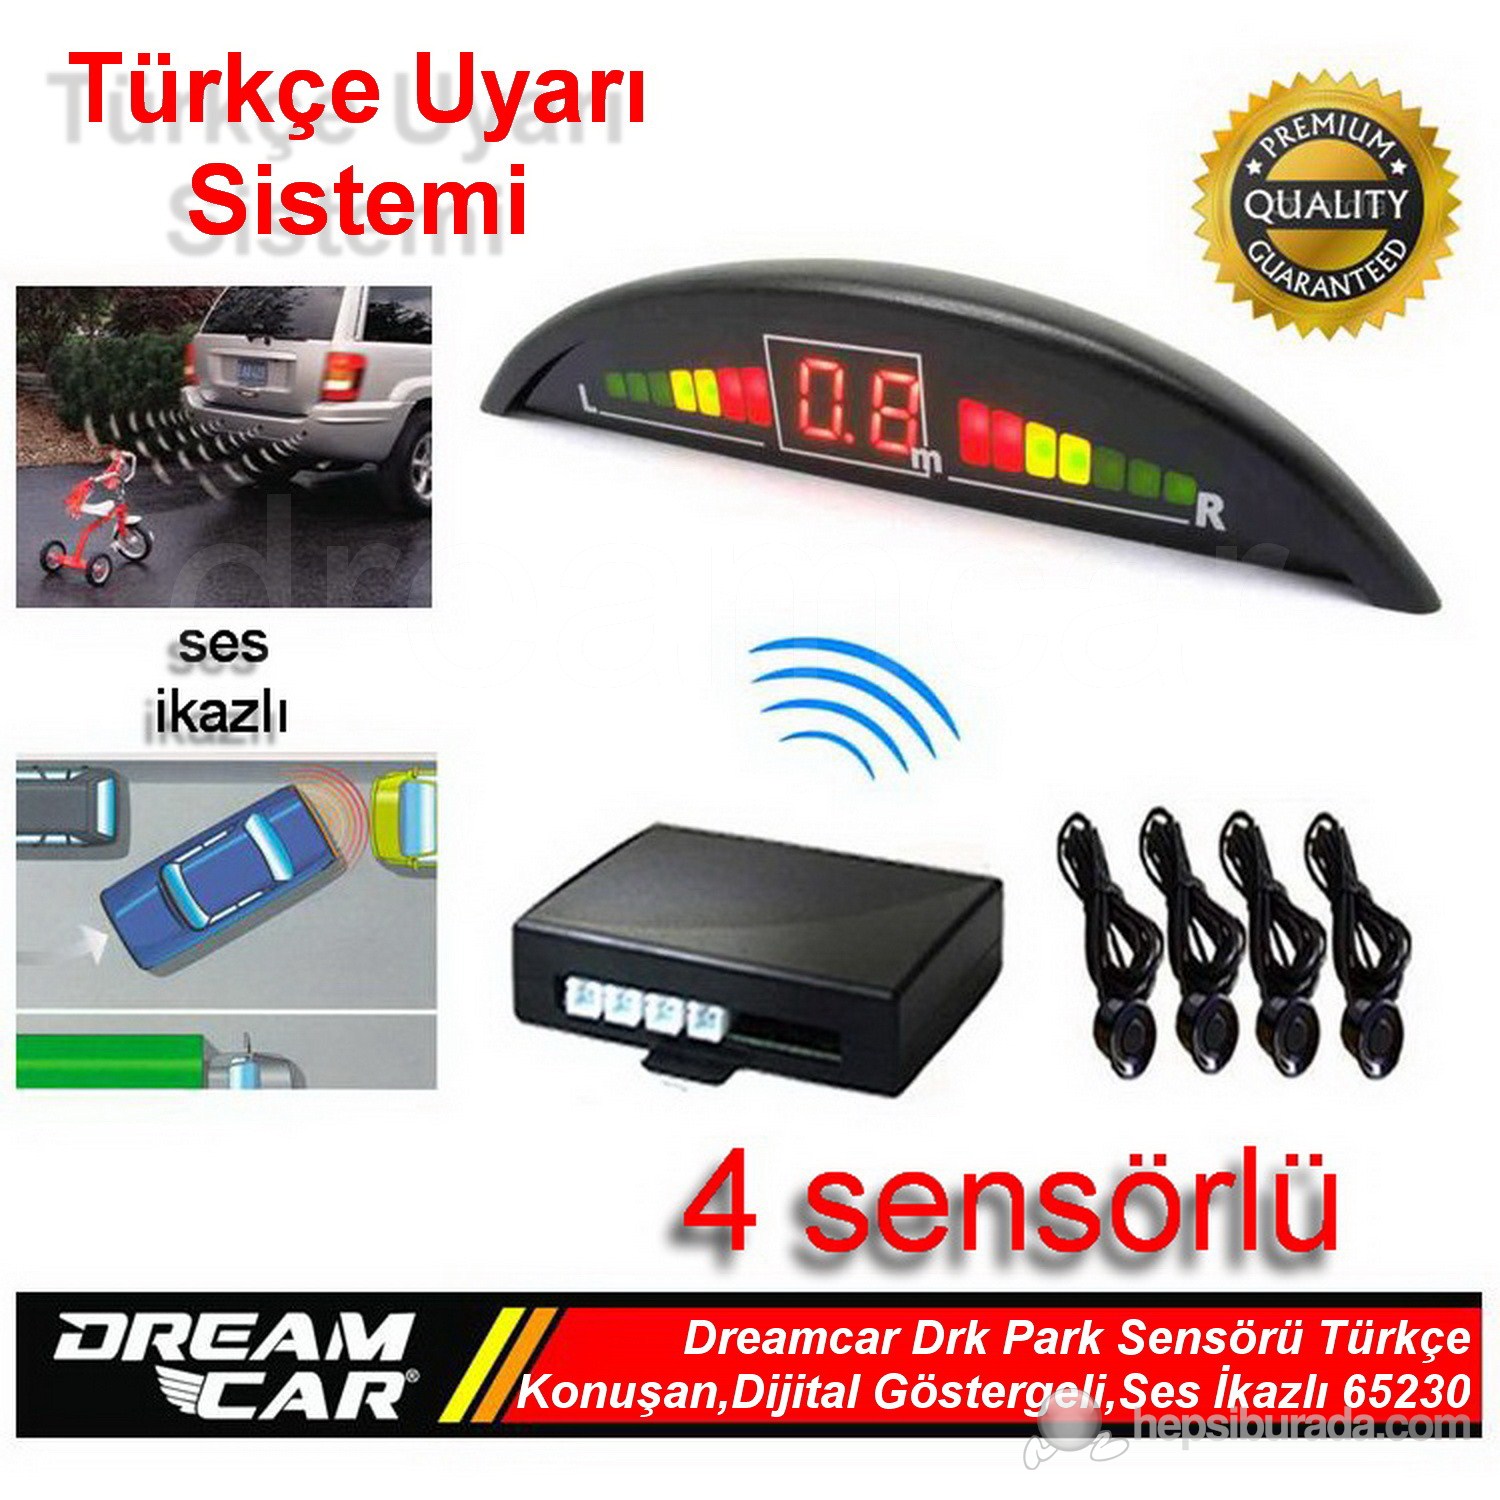 Dreamcar Drk Park Sensörü Türkçe Konuşmalı,Dijital Ekranlı,Ses İkazlı,4 Sensörlü 65230